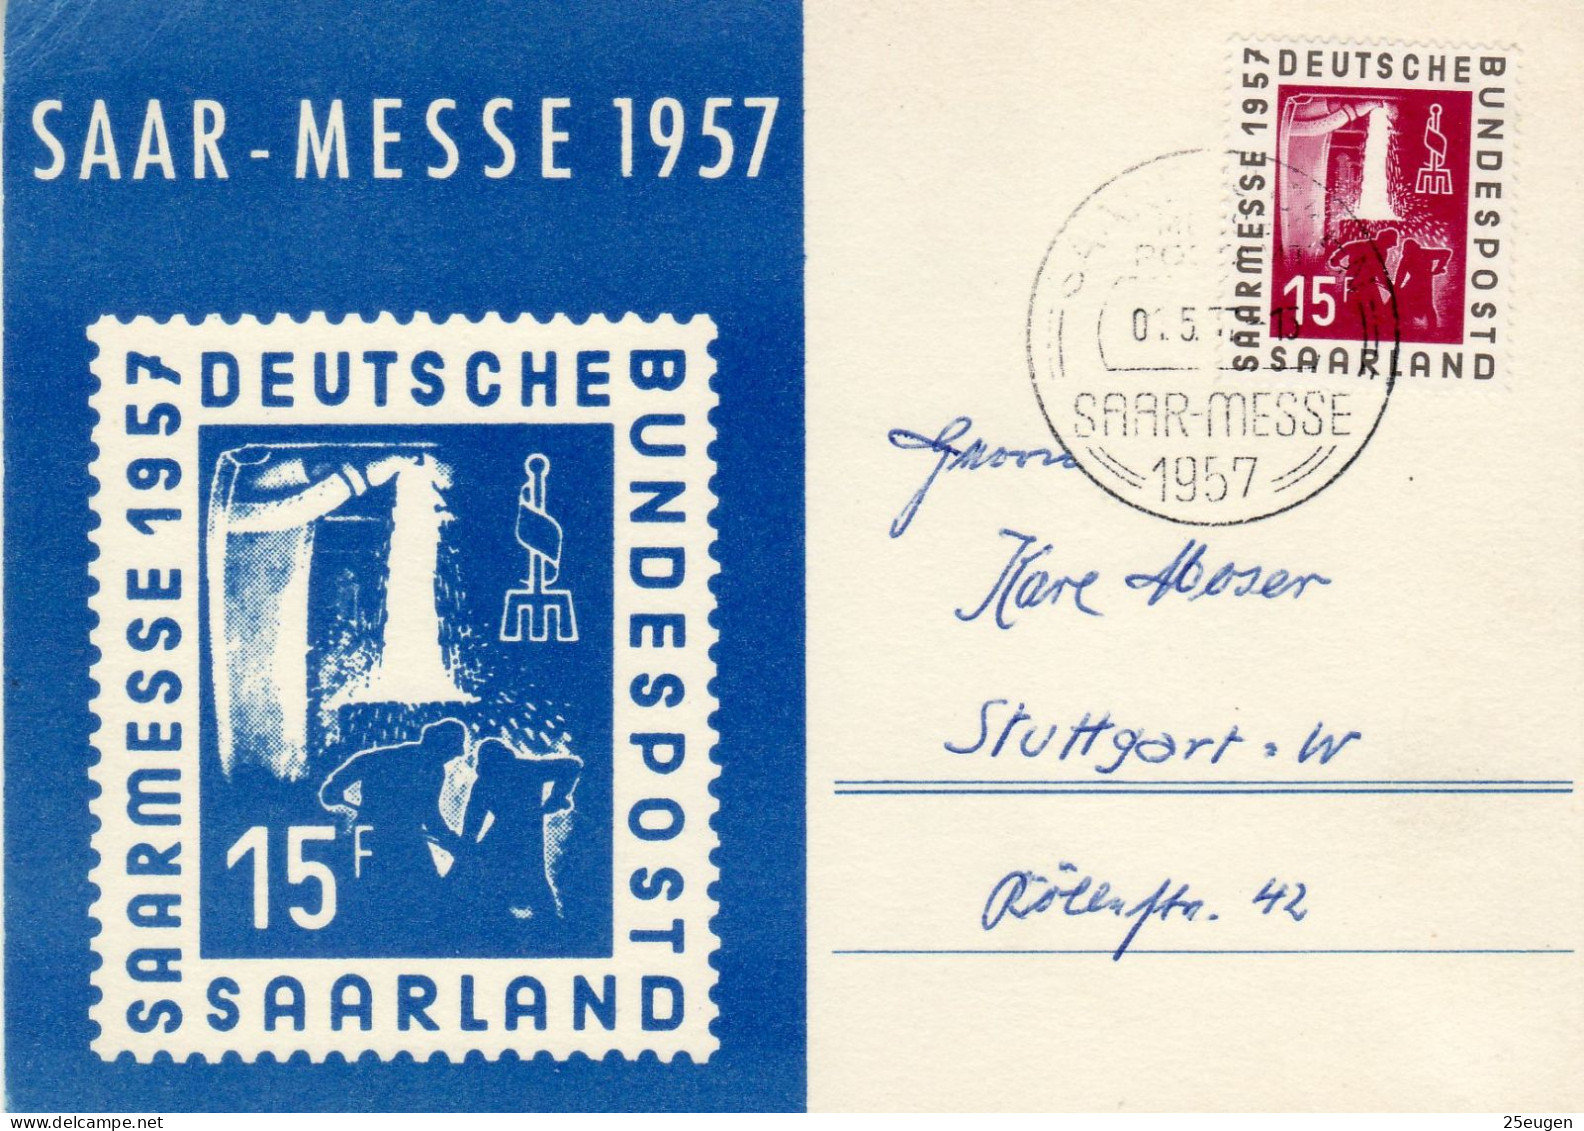 SAAR 1957  POSTCARD SENT FROM SAARBRUECKEN TO STUTTGART - Covers & Documents